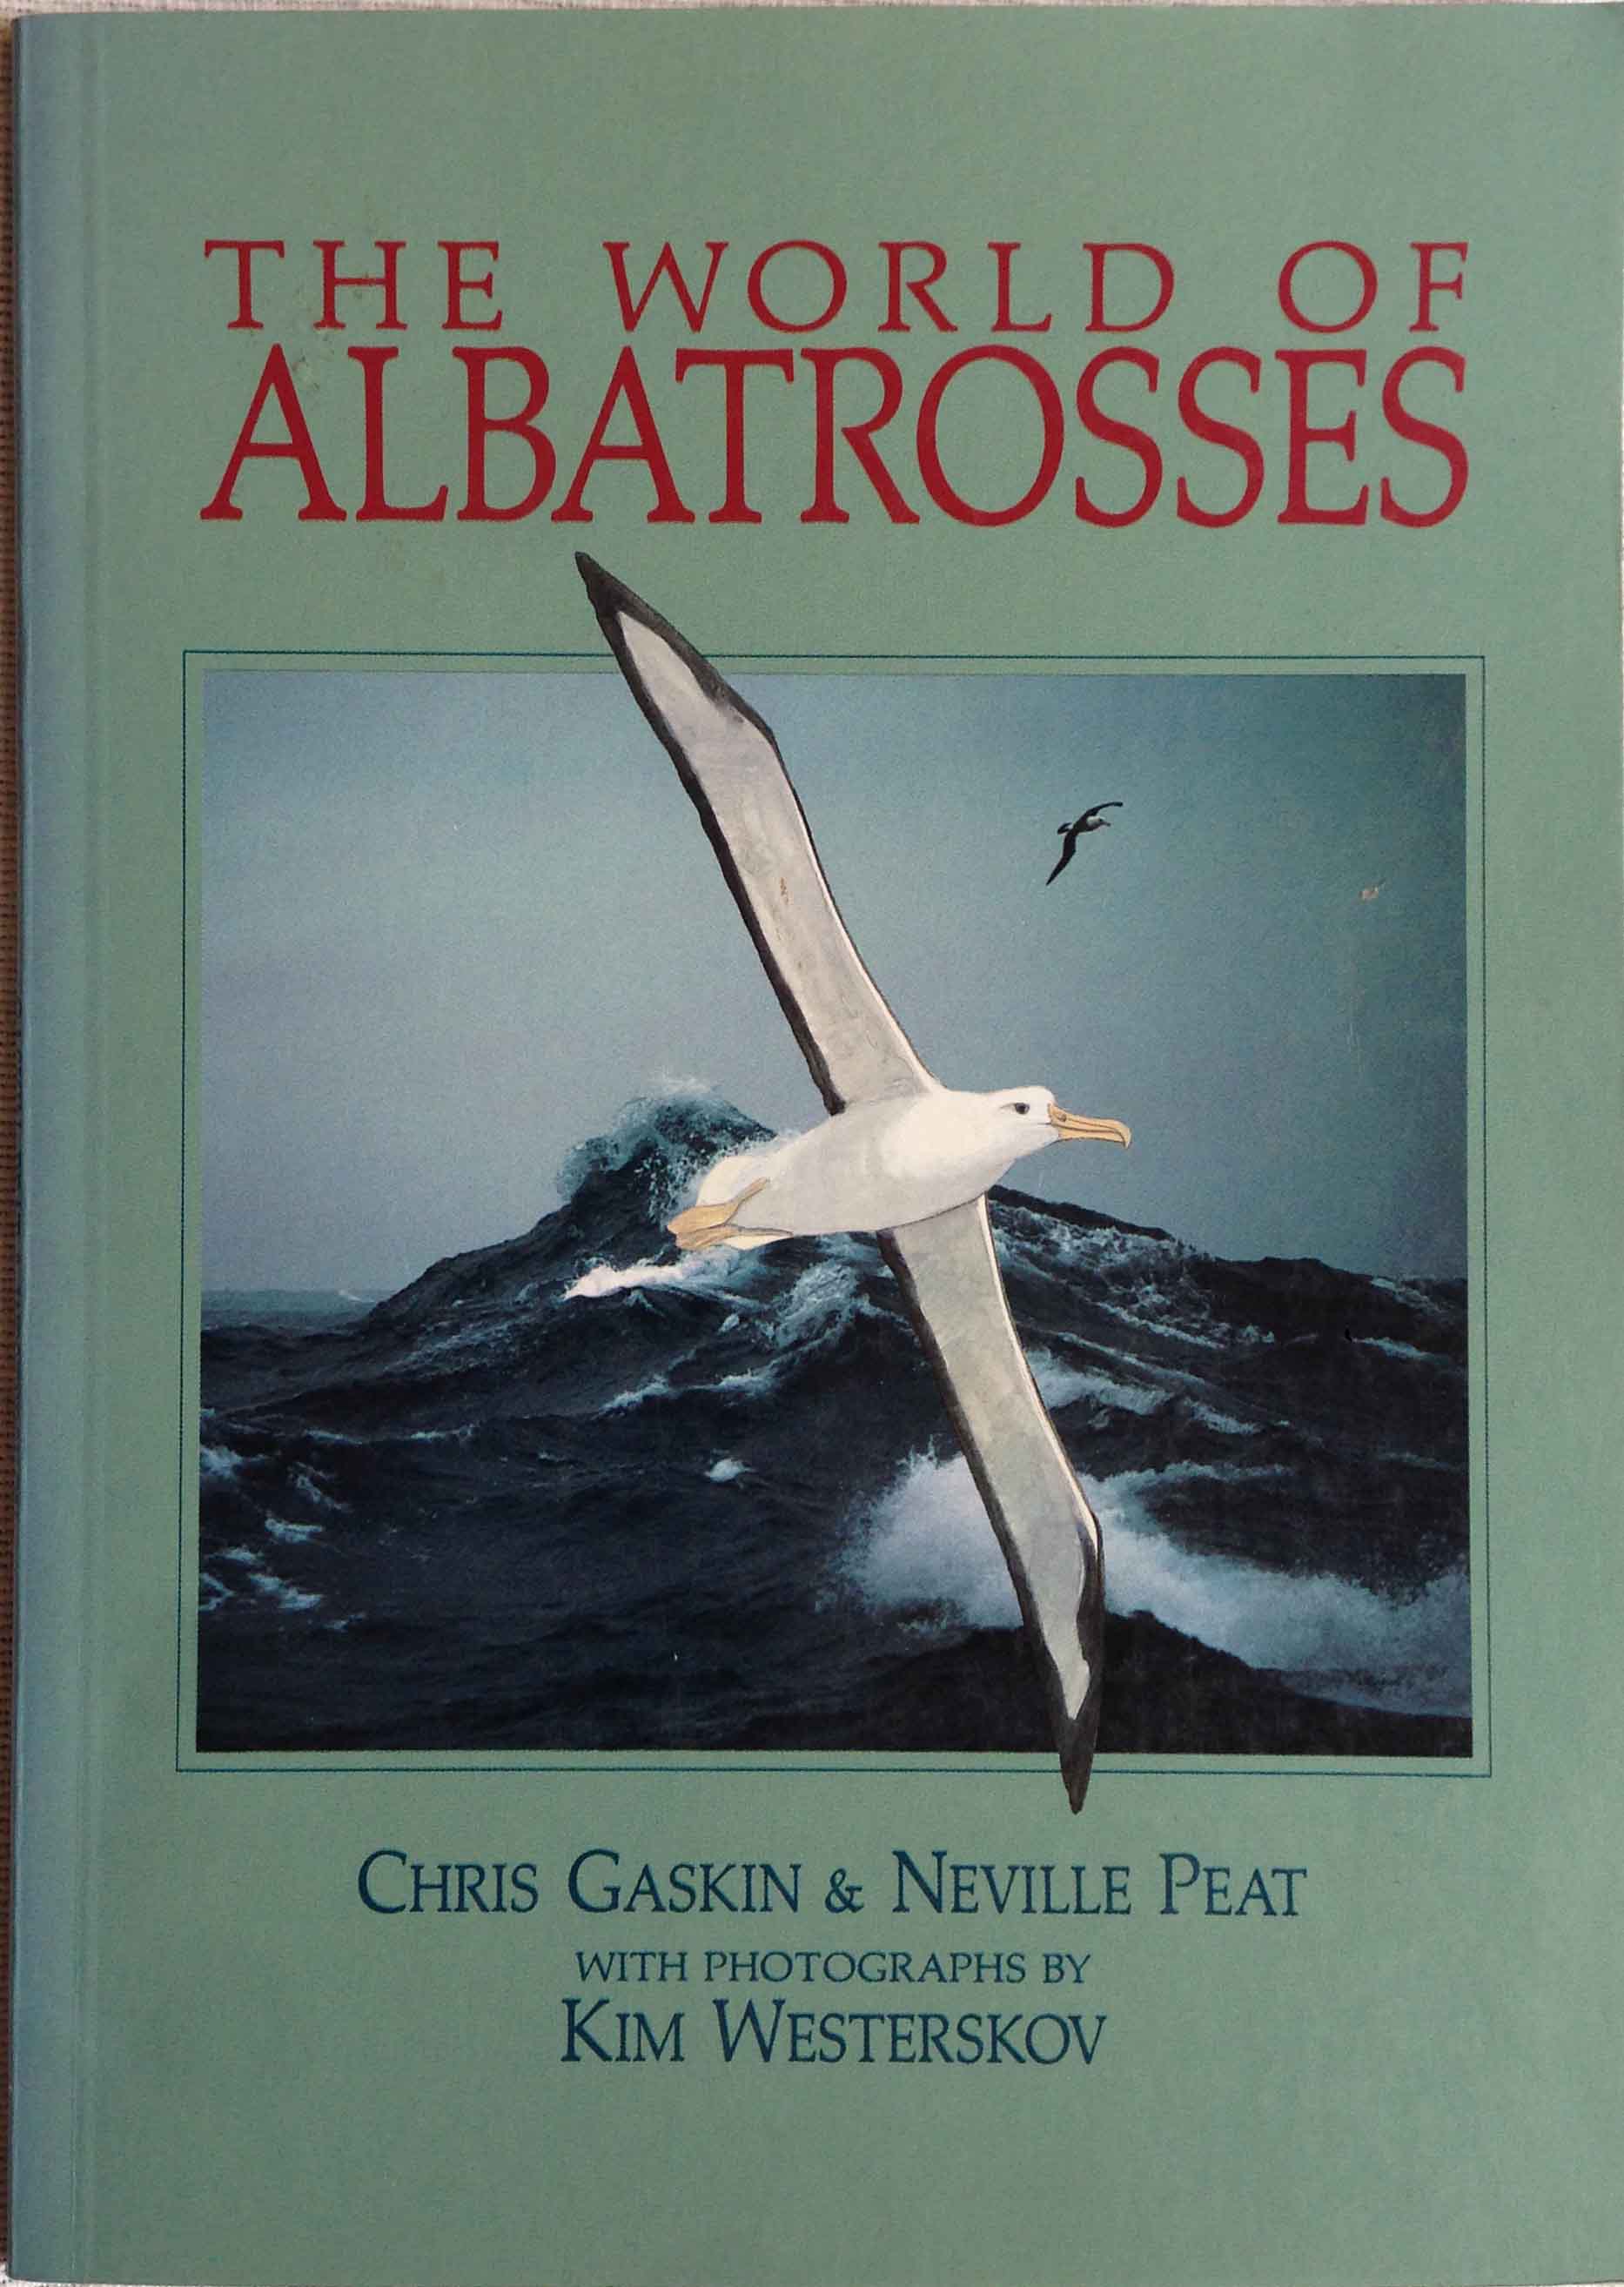 The World of Albatrosses